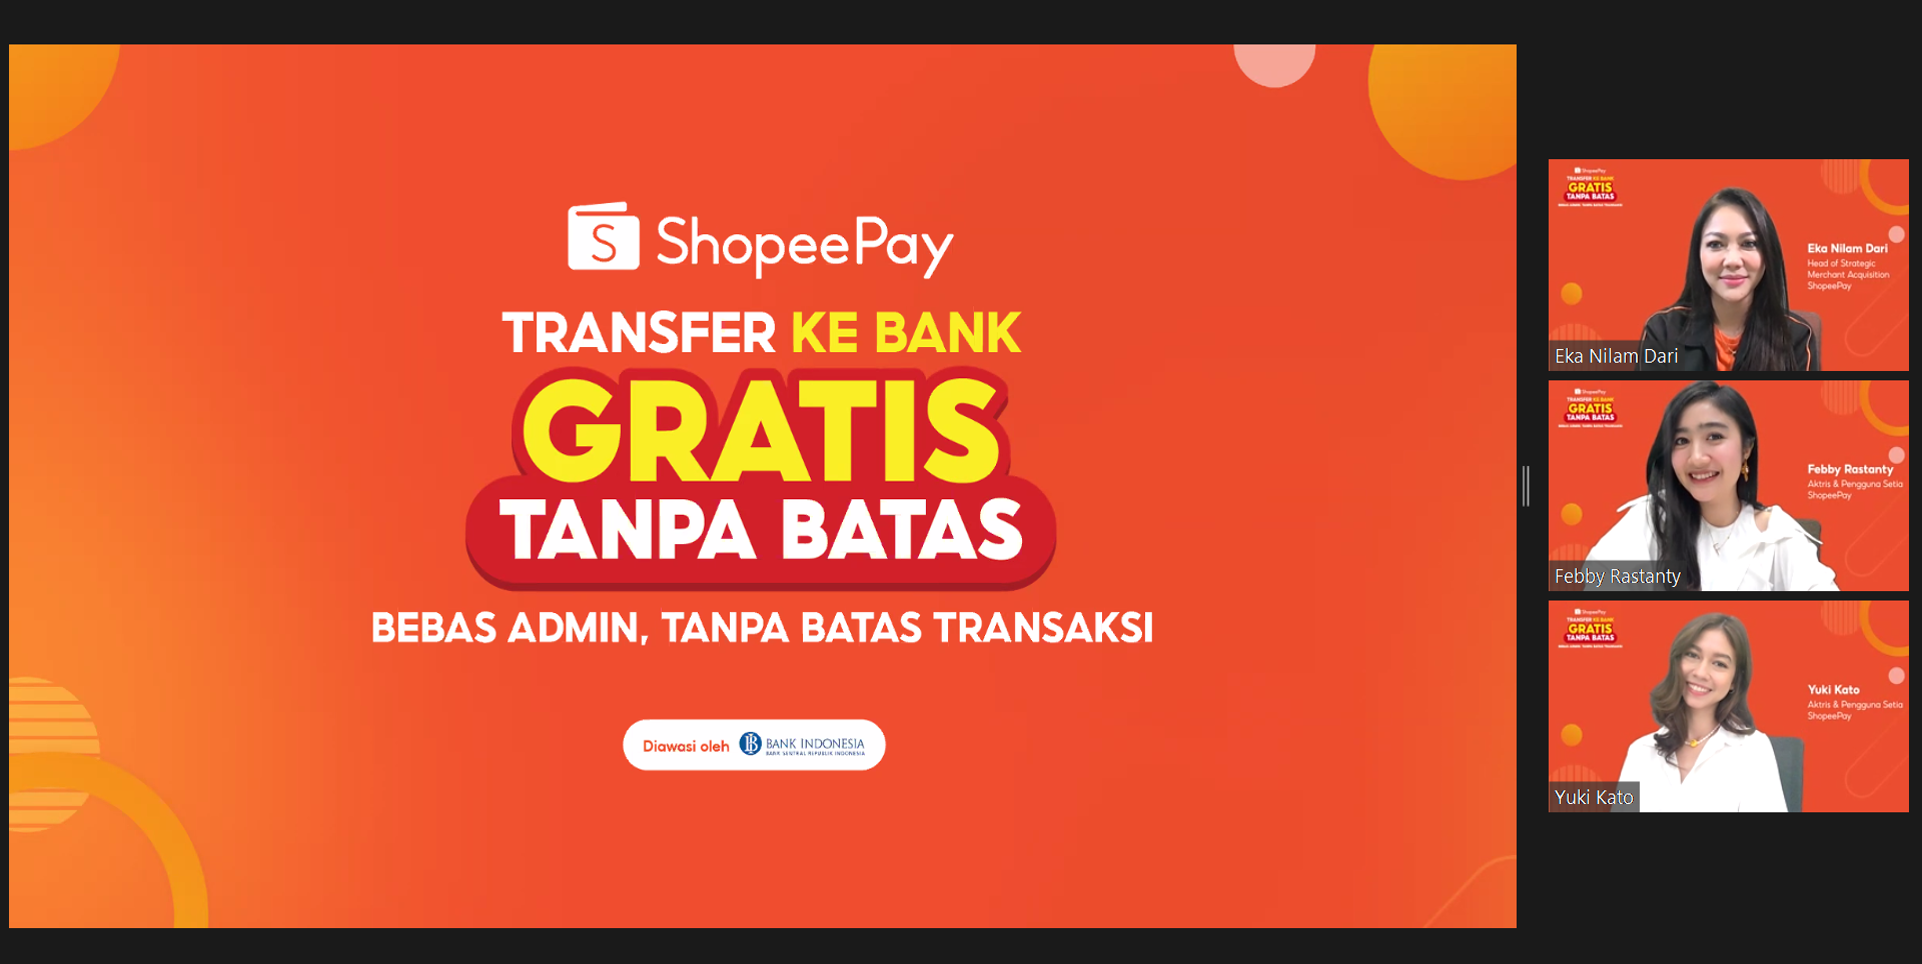 Foto 1 - ShopeePay Luncurkan Fitur Transfer ke Bank Gratis Tanpa Batas untuk Dukung Masyarakat Makin Produktif